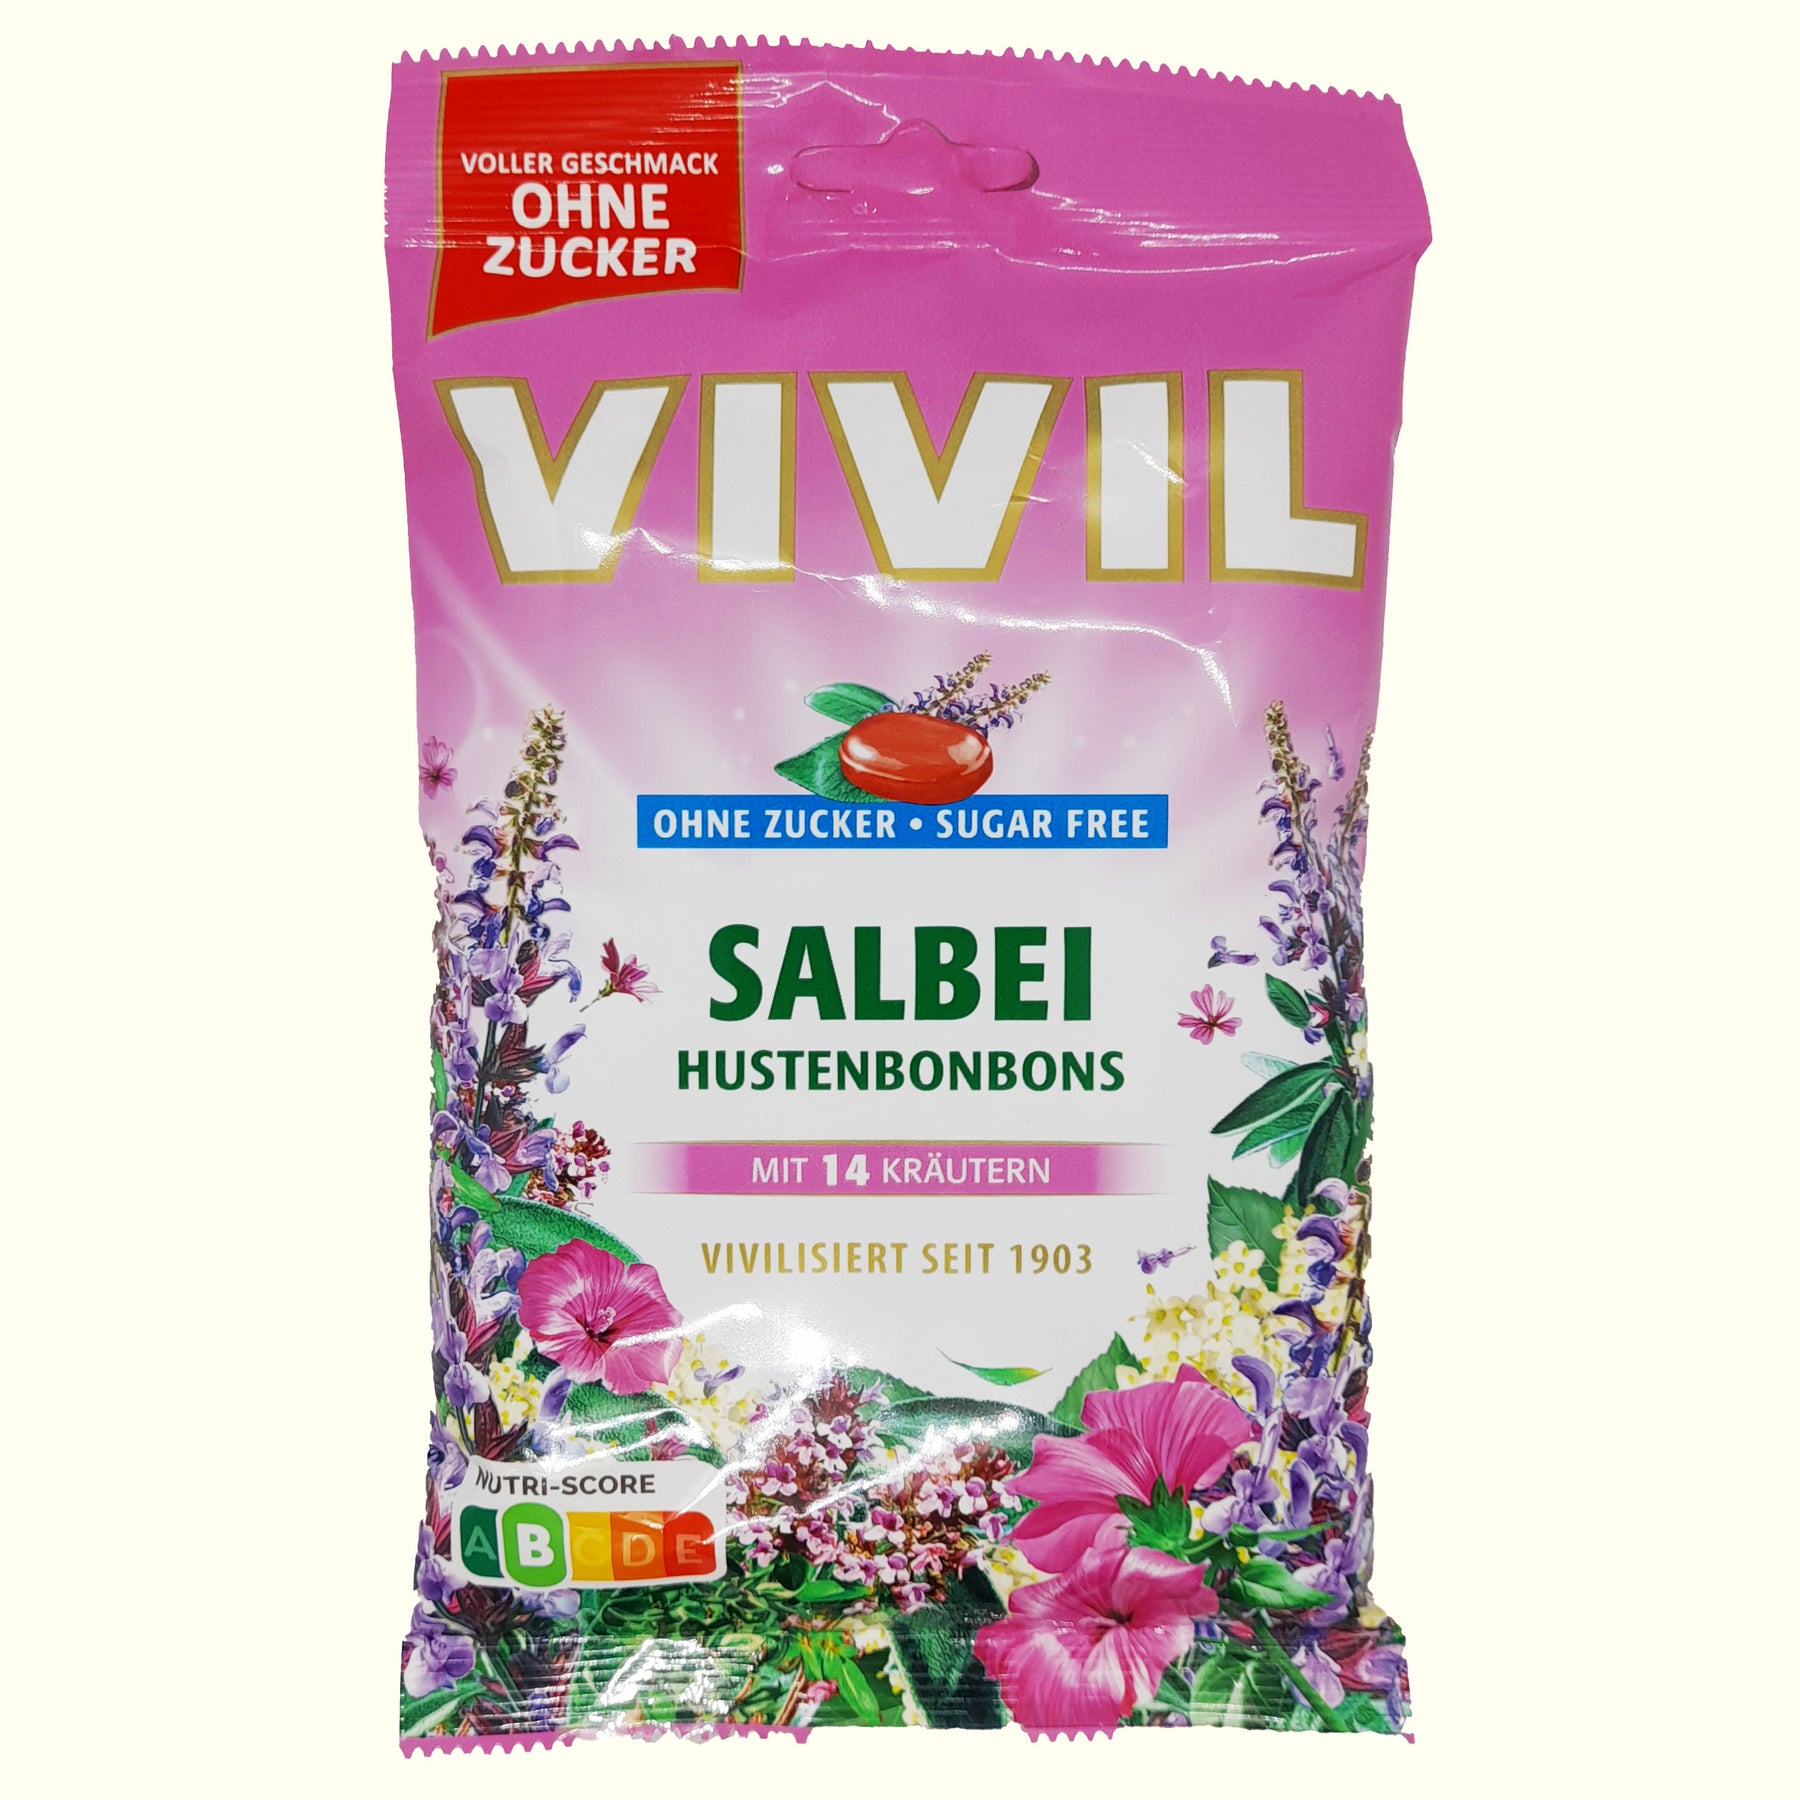 Vivil Salbei Hustenbonbons zuckerfrei - 120g